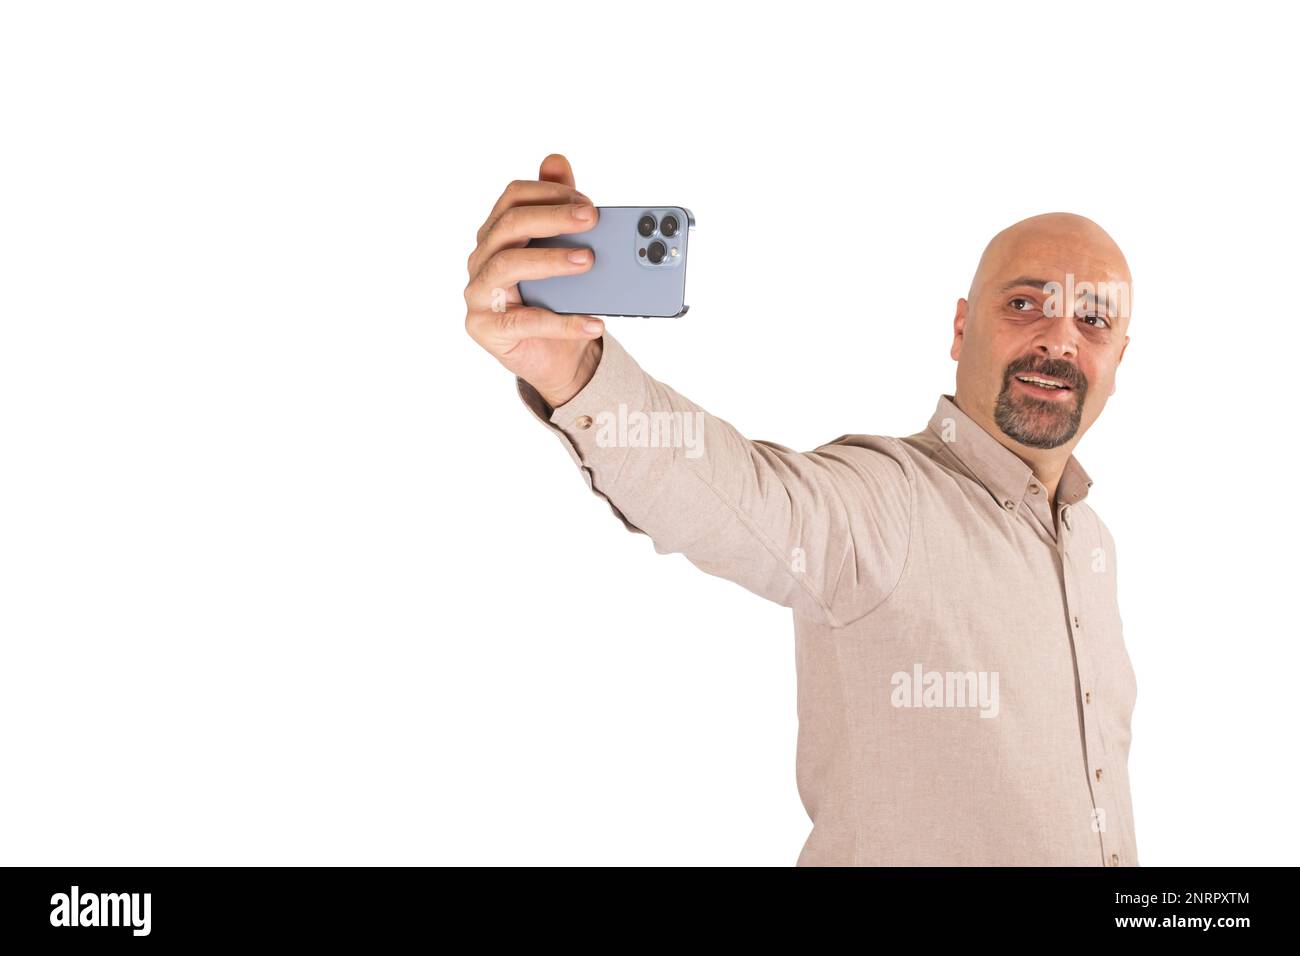 Portrait d'un homme millénaire caucasien prenant un selfie. Arrière-plan blanc isolé et debout. Tenir un smartphone moderne avec trois appareils photo. Un homme souriant. Banque D'Images